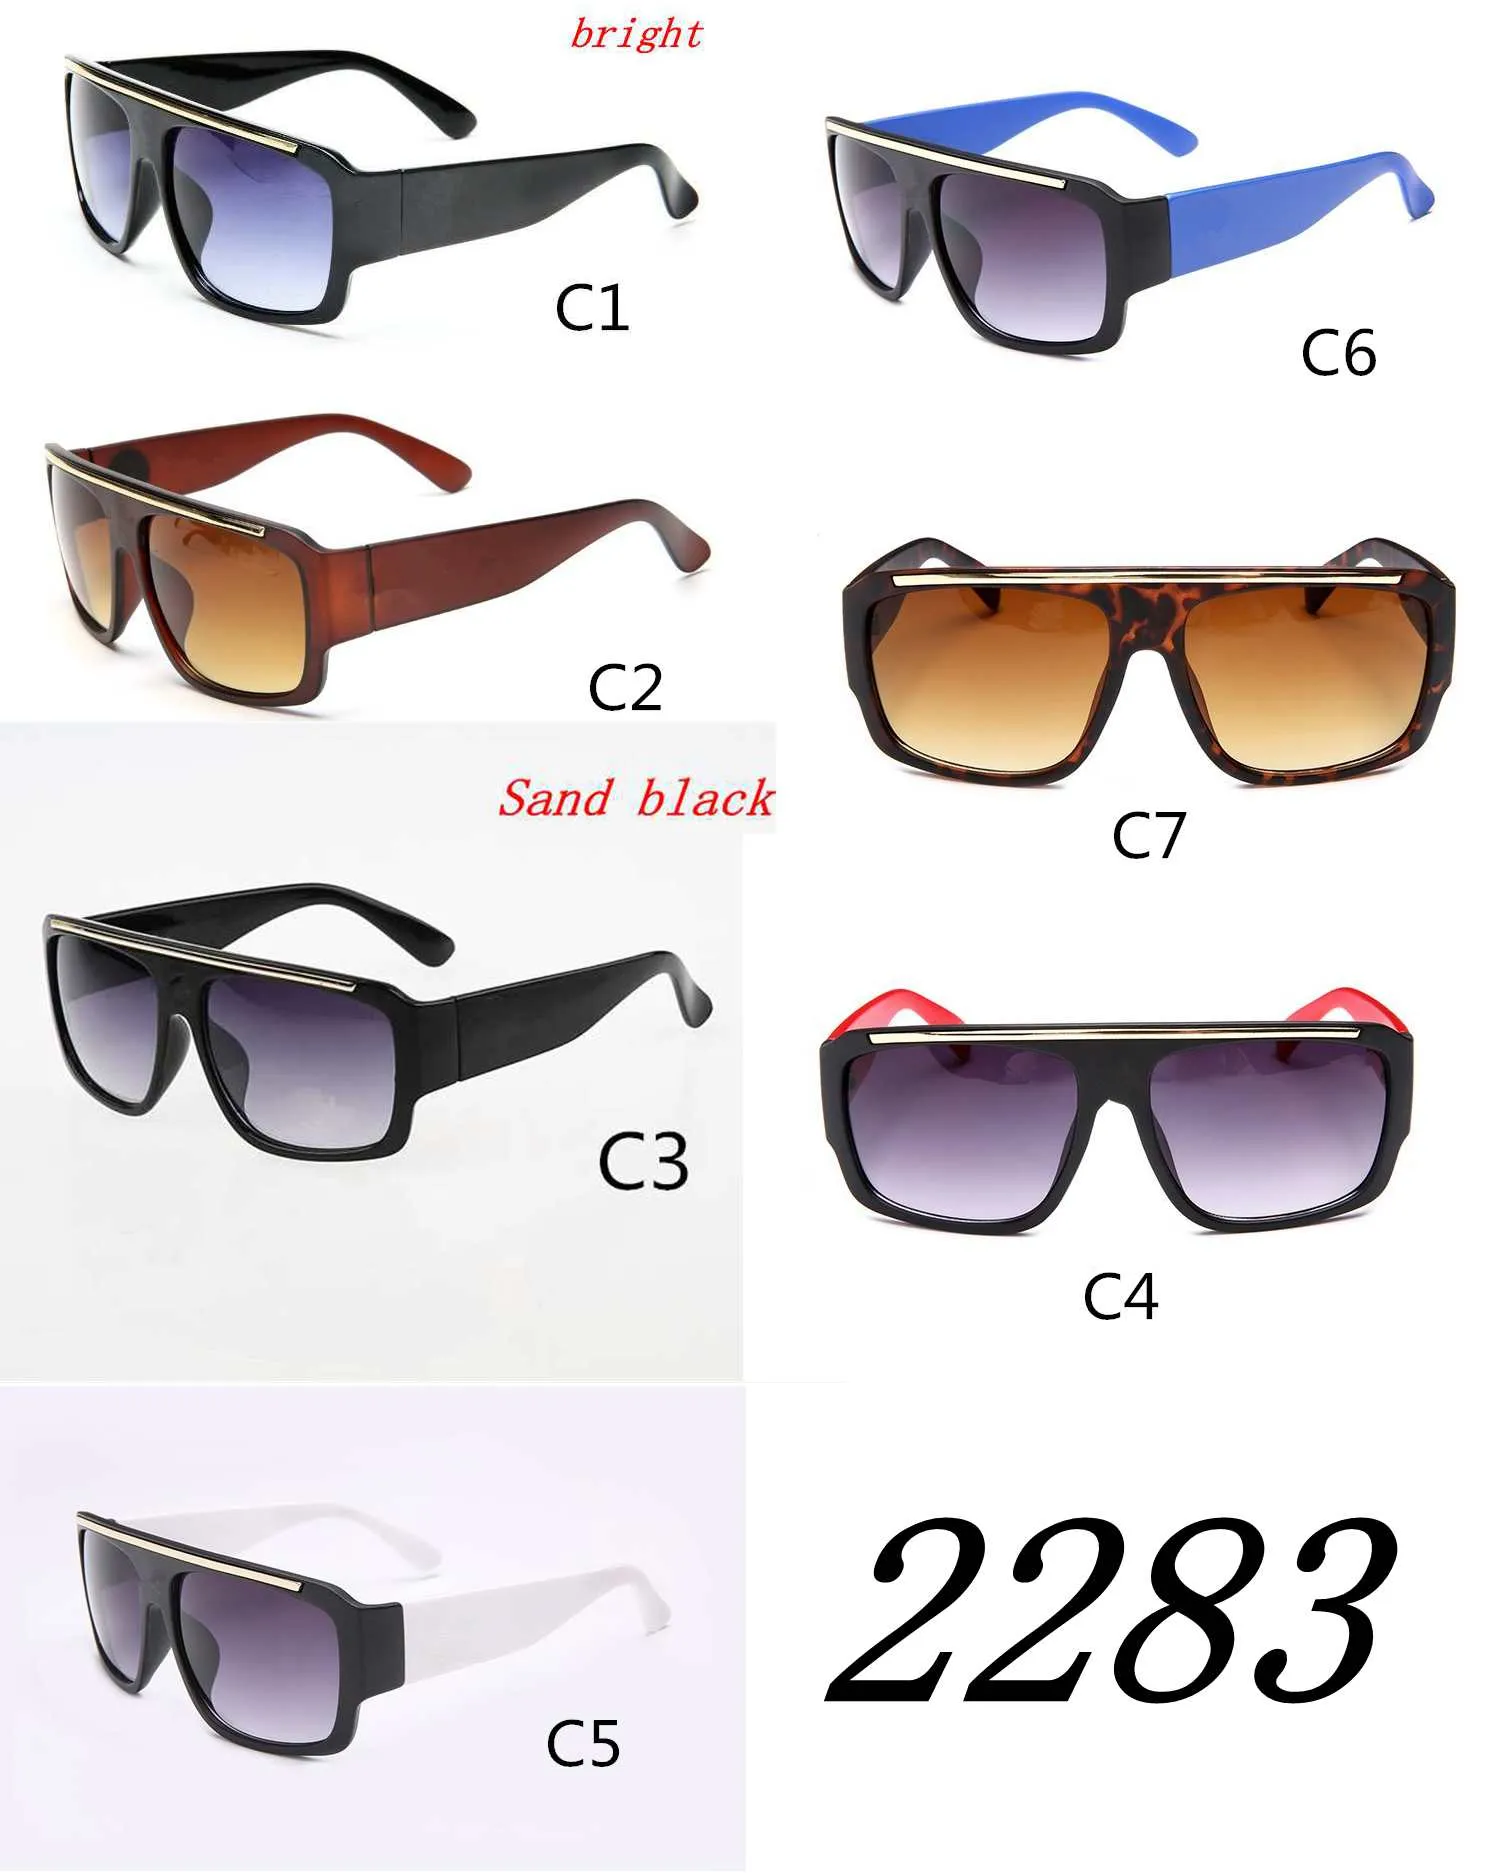 Marka erkekler kadınlar Güneş Gözlükleri Moda Zarif Güneş Gözlüğü Vintage Kurbağa Gözlük Siyah Geniş Çerçeveler Lens Çerçeve Göz aşınma kalitesi A + + + ADEDI = 10